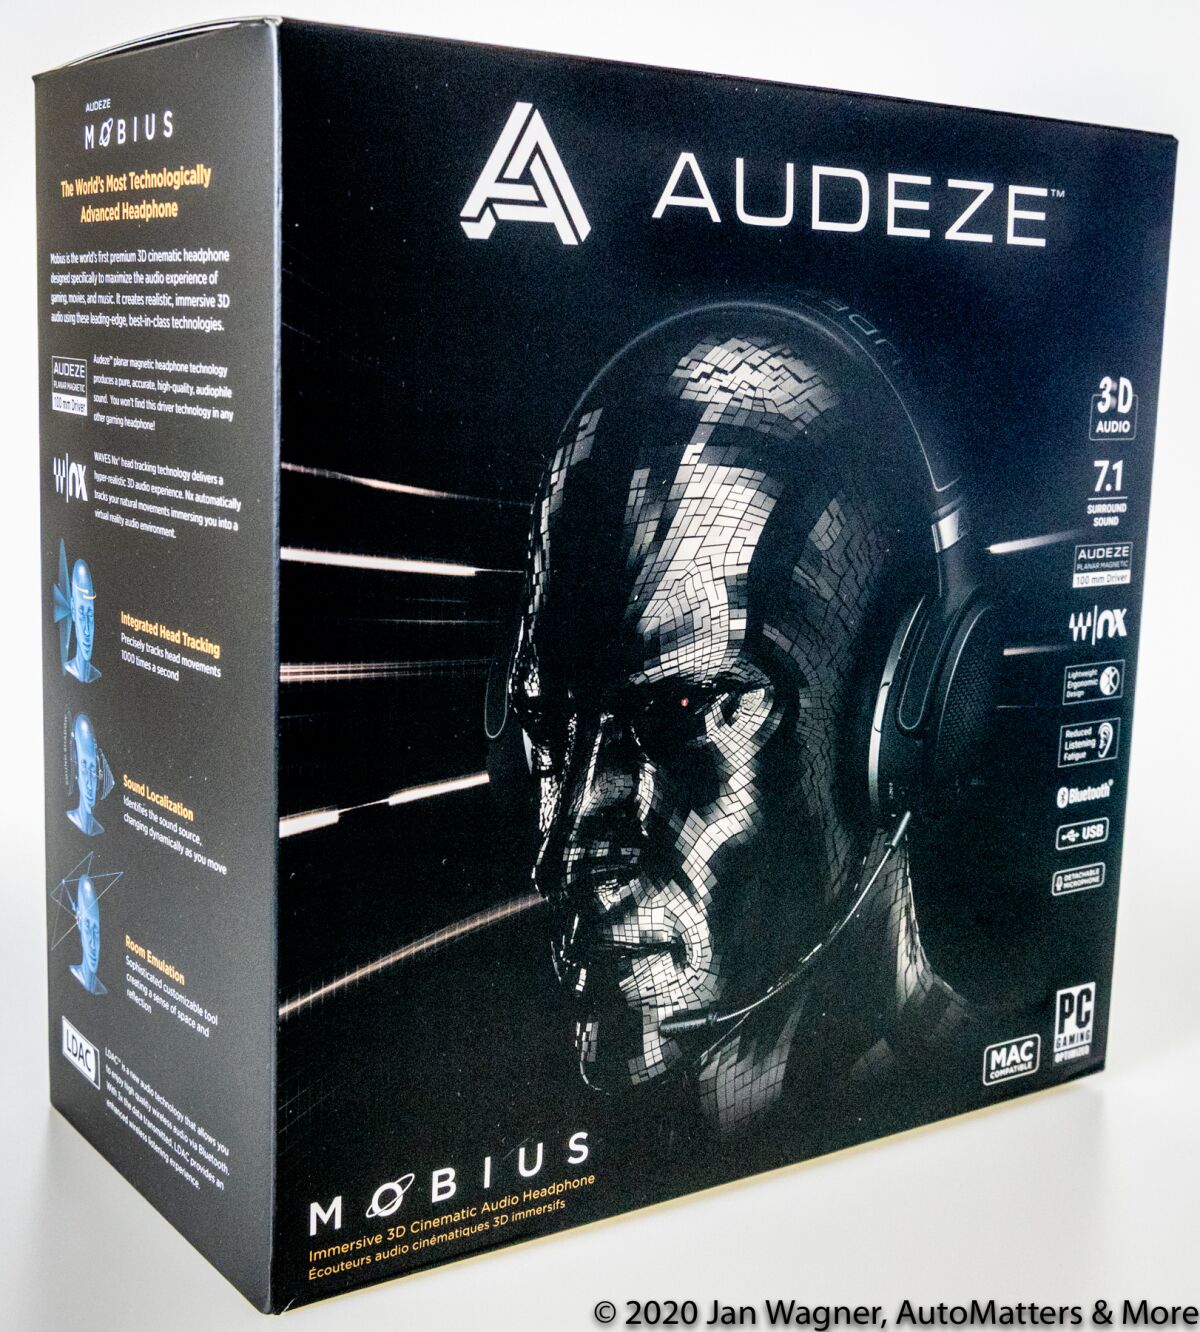 Audeze Mobius boxed